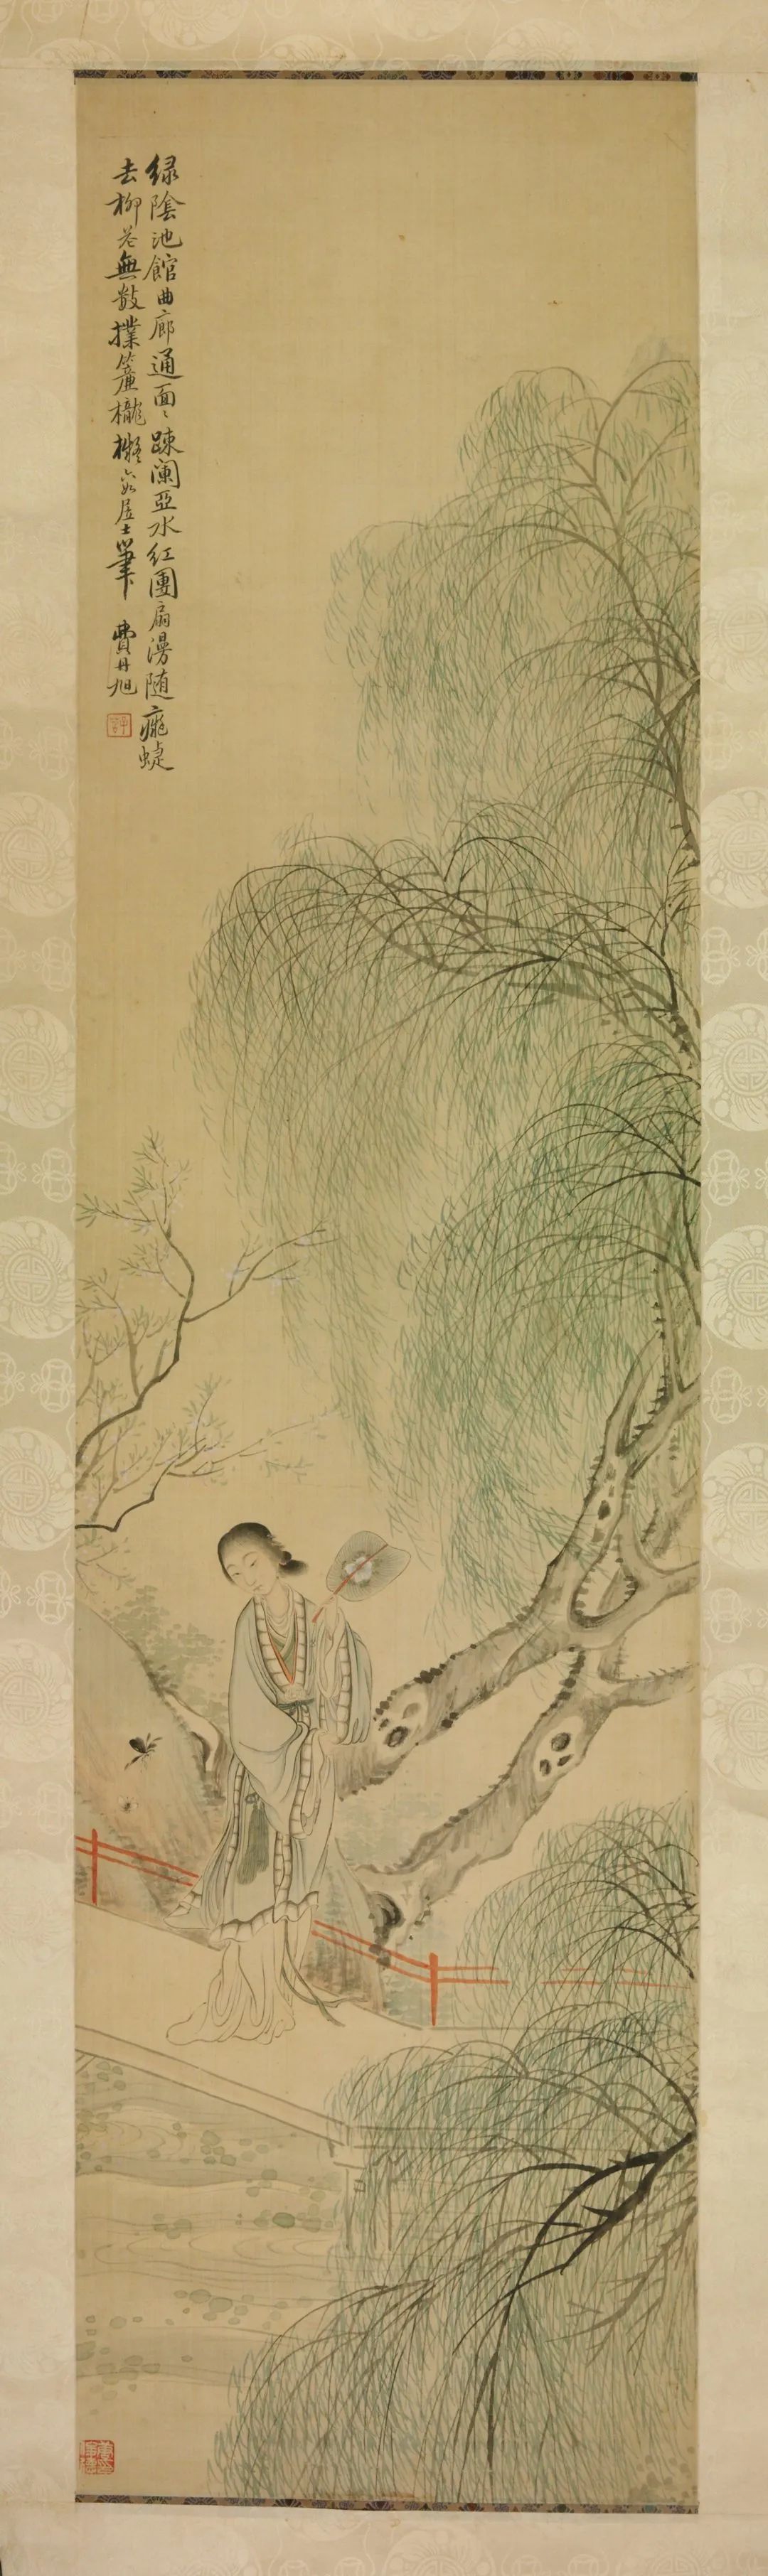 清·费丹旭·四季美女图 绢本设色 126×32厘米×4 湖南省博物馆藏